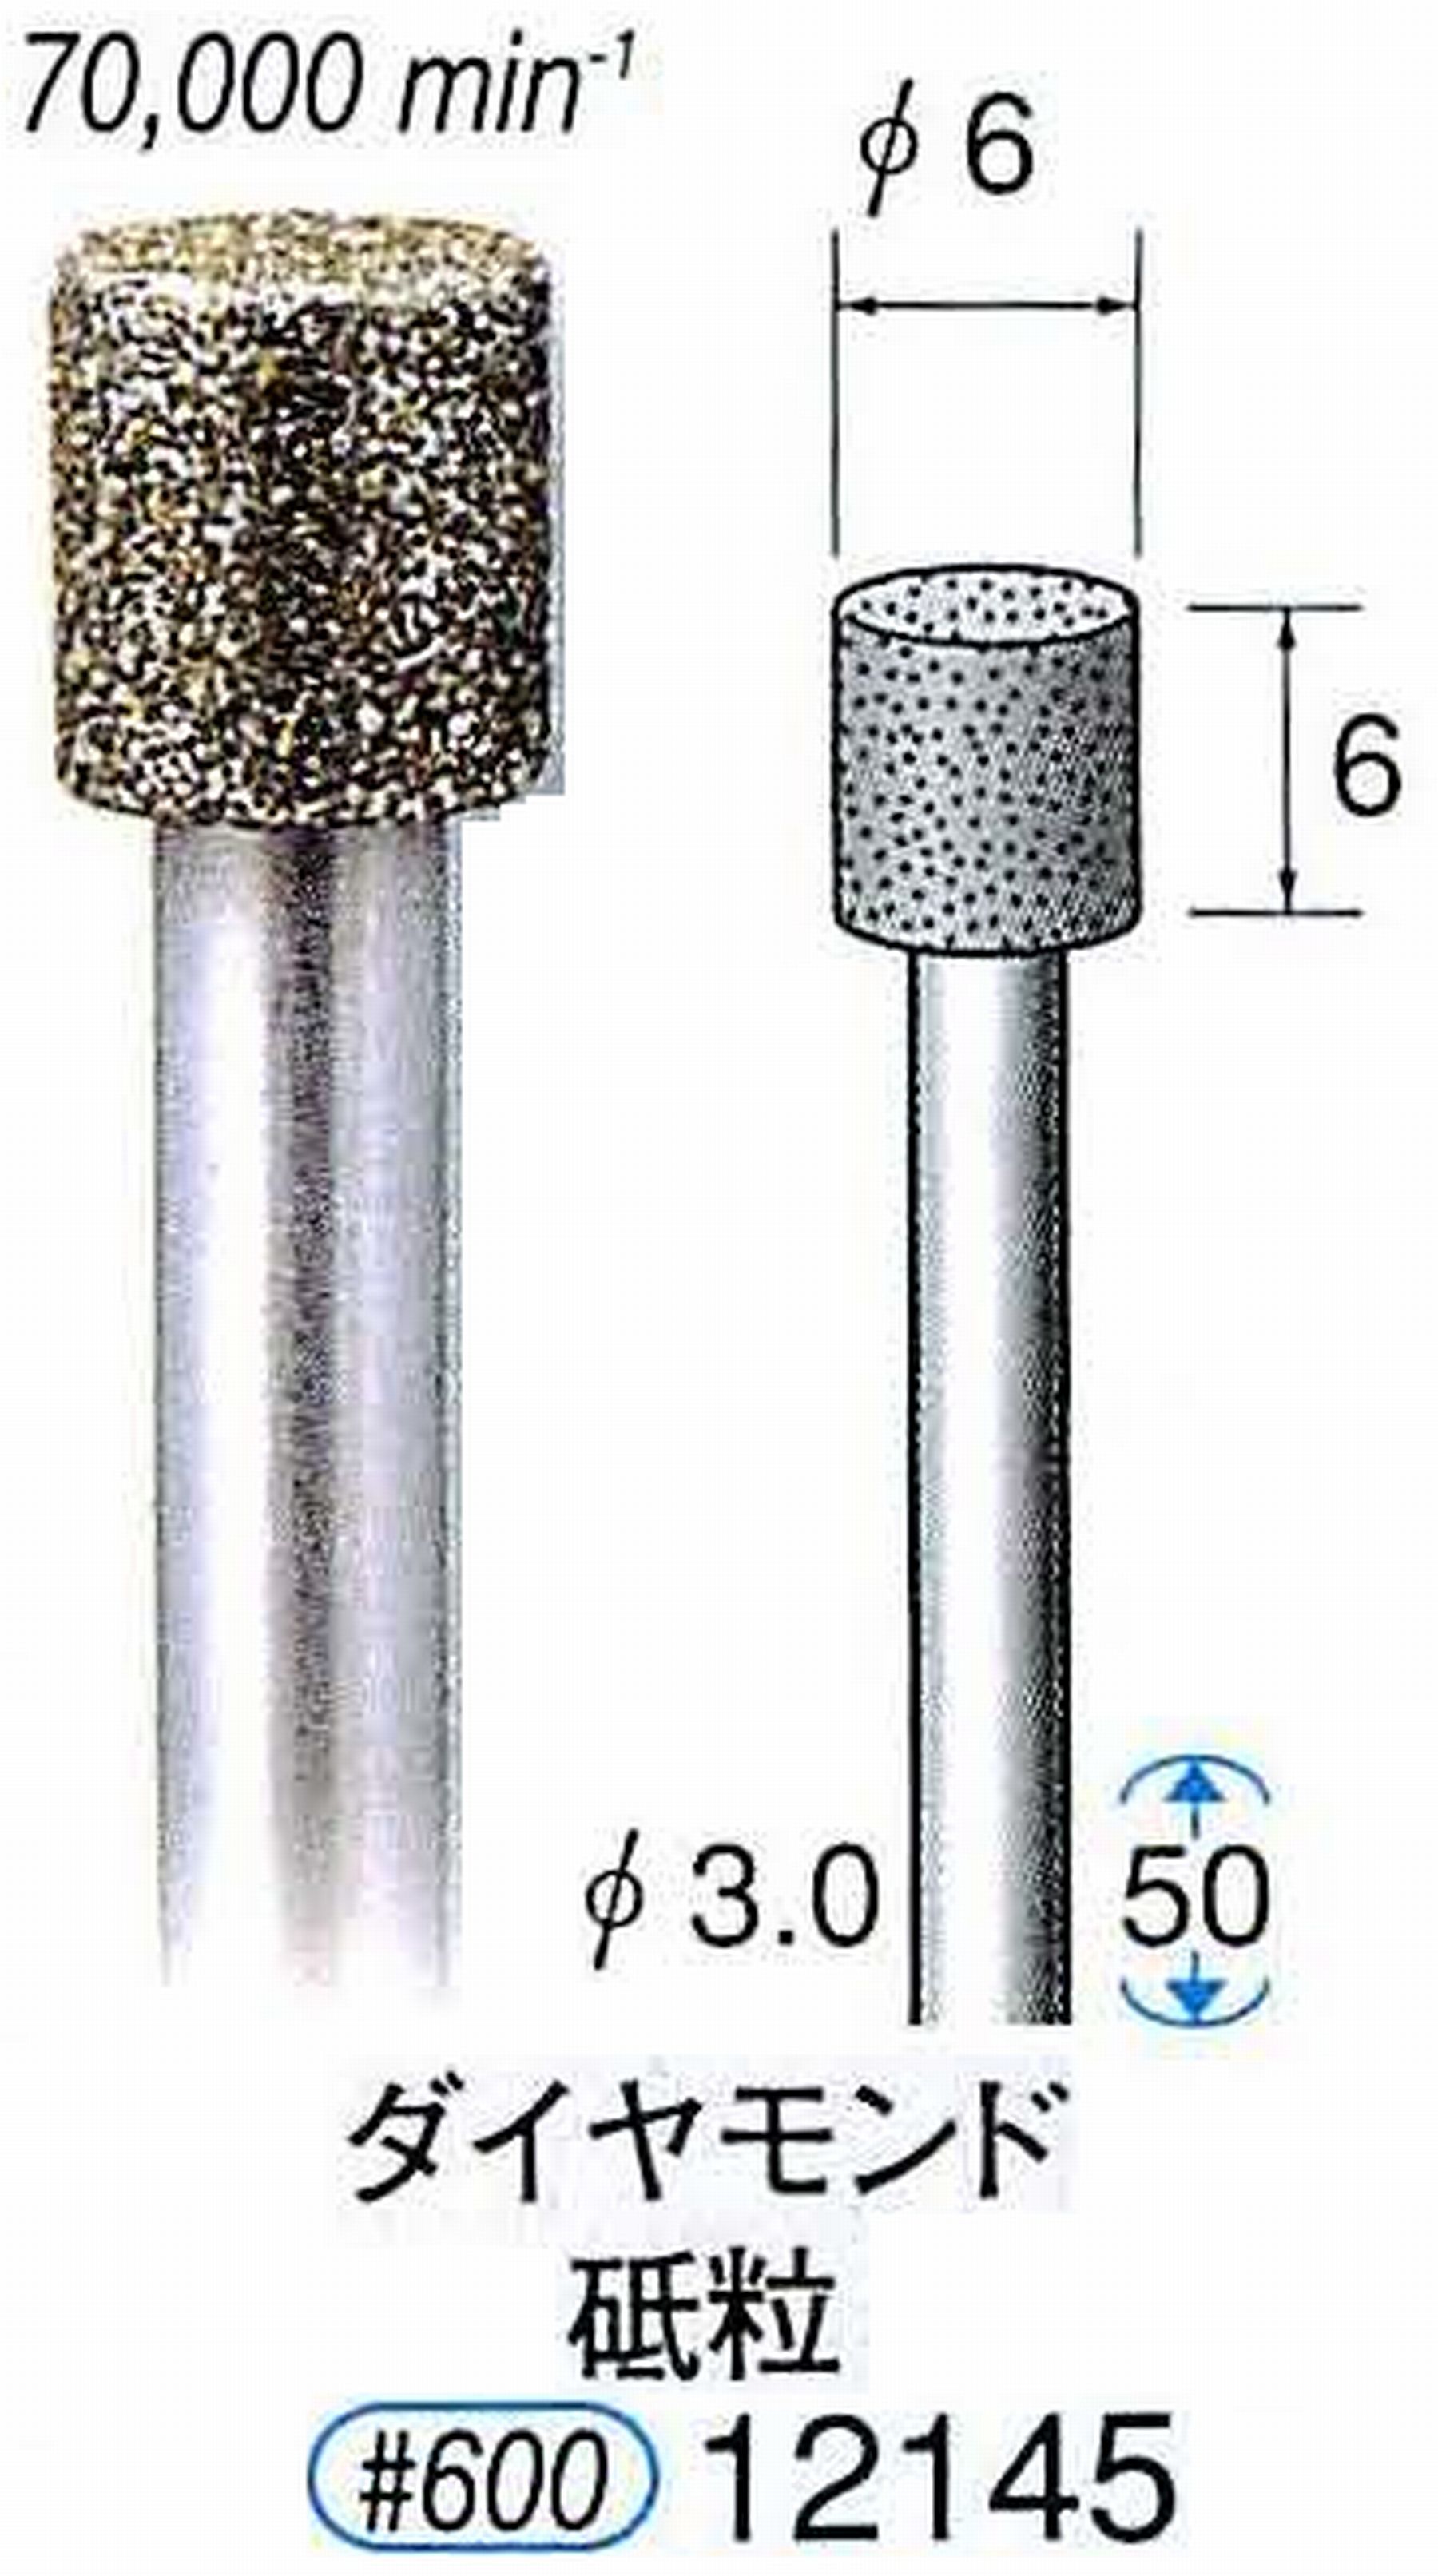 ナカニシ/NAKANISHI 電着ダイヤモンド ダイヤモンド砥粒 軸径(シャンク)φ3.0mm 12145